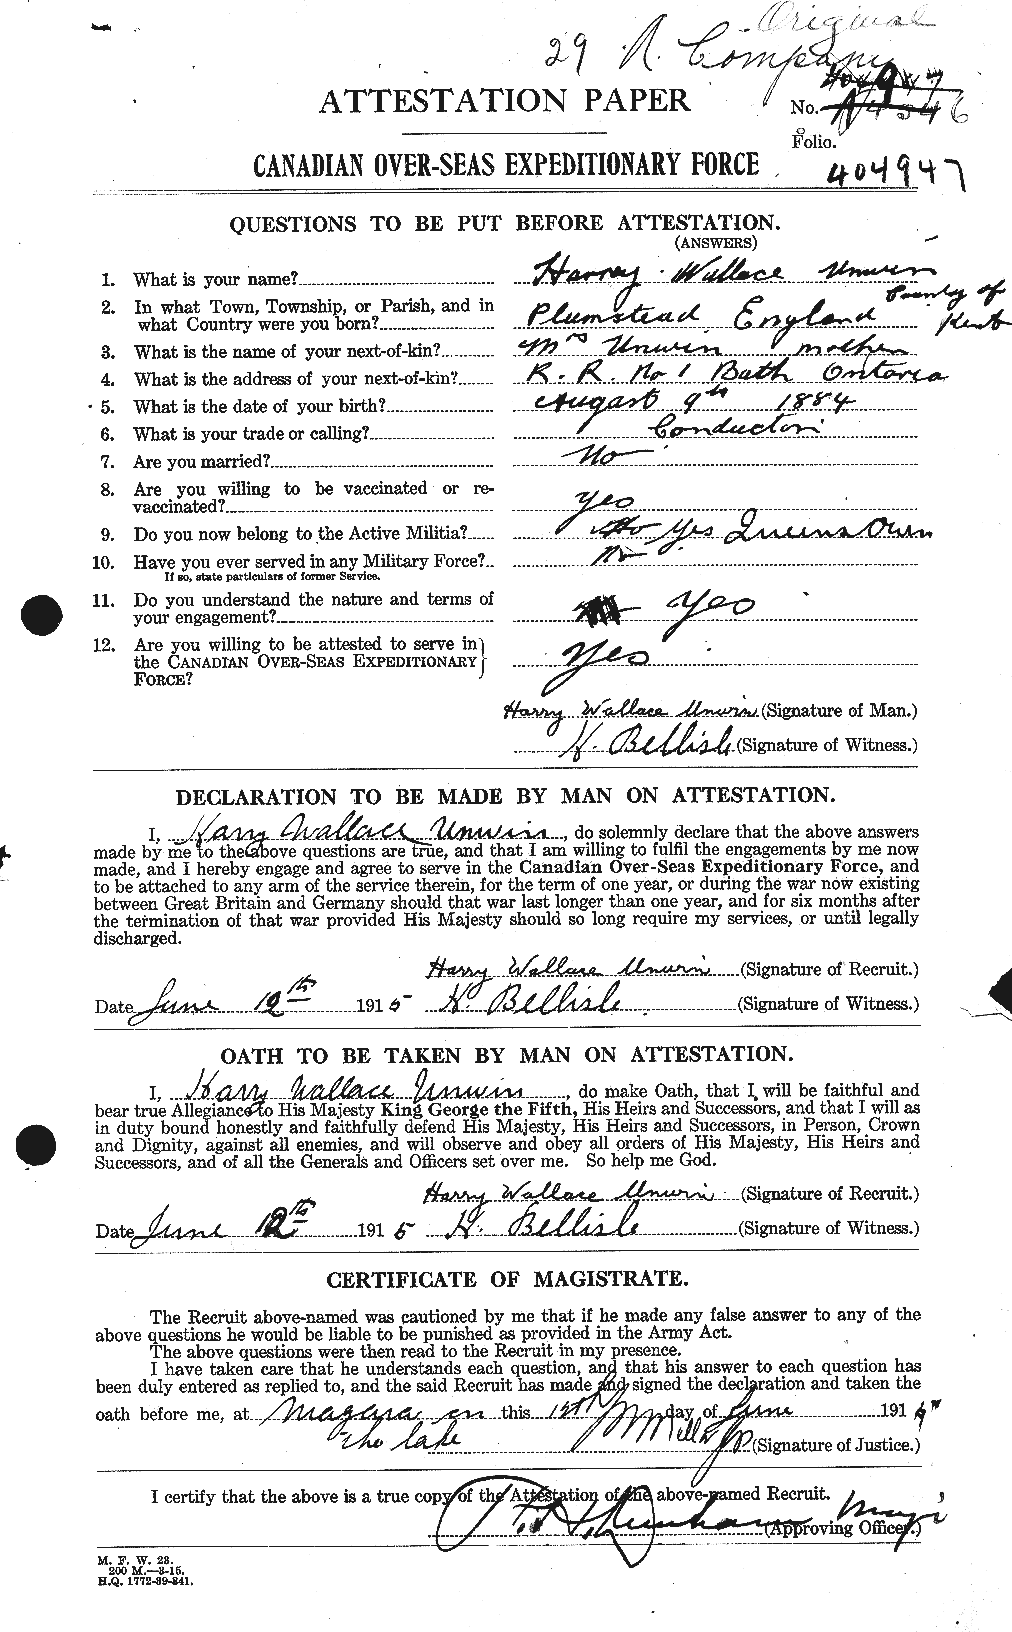 Dossiers du Personnel de la Première Guerre mondiale - CEC 648073a